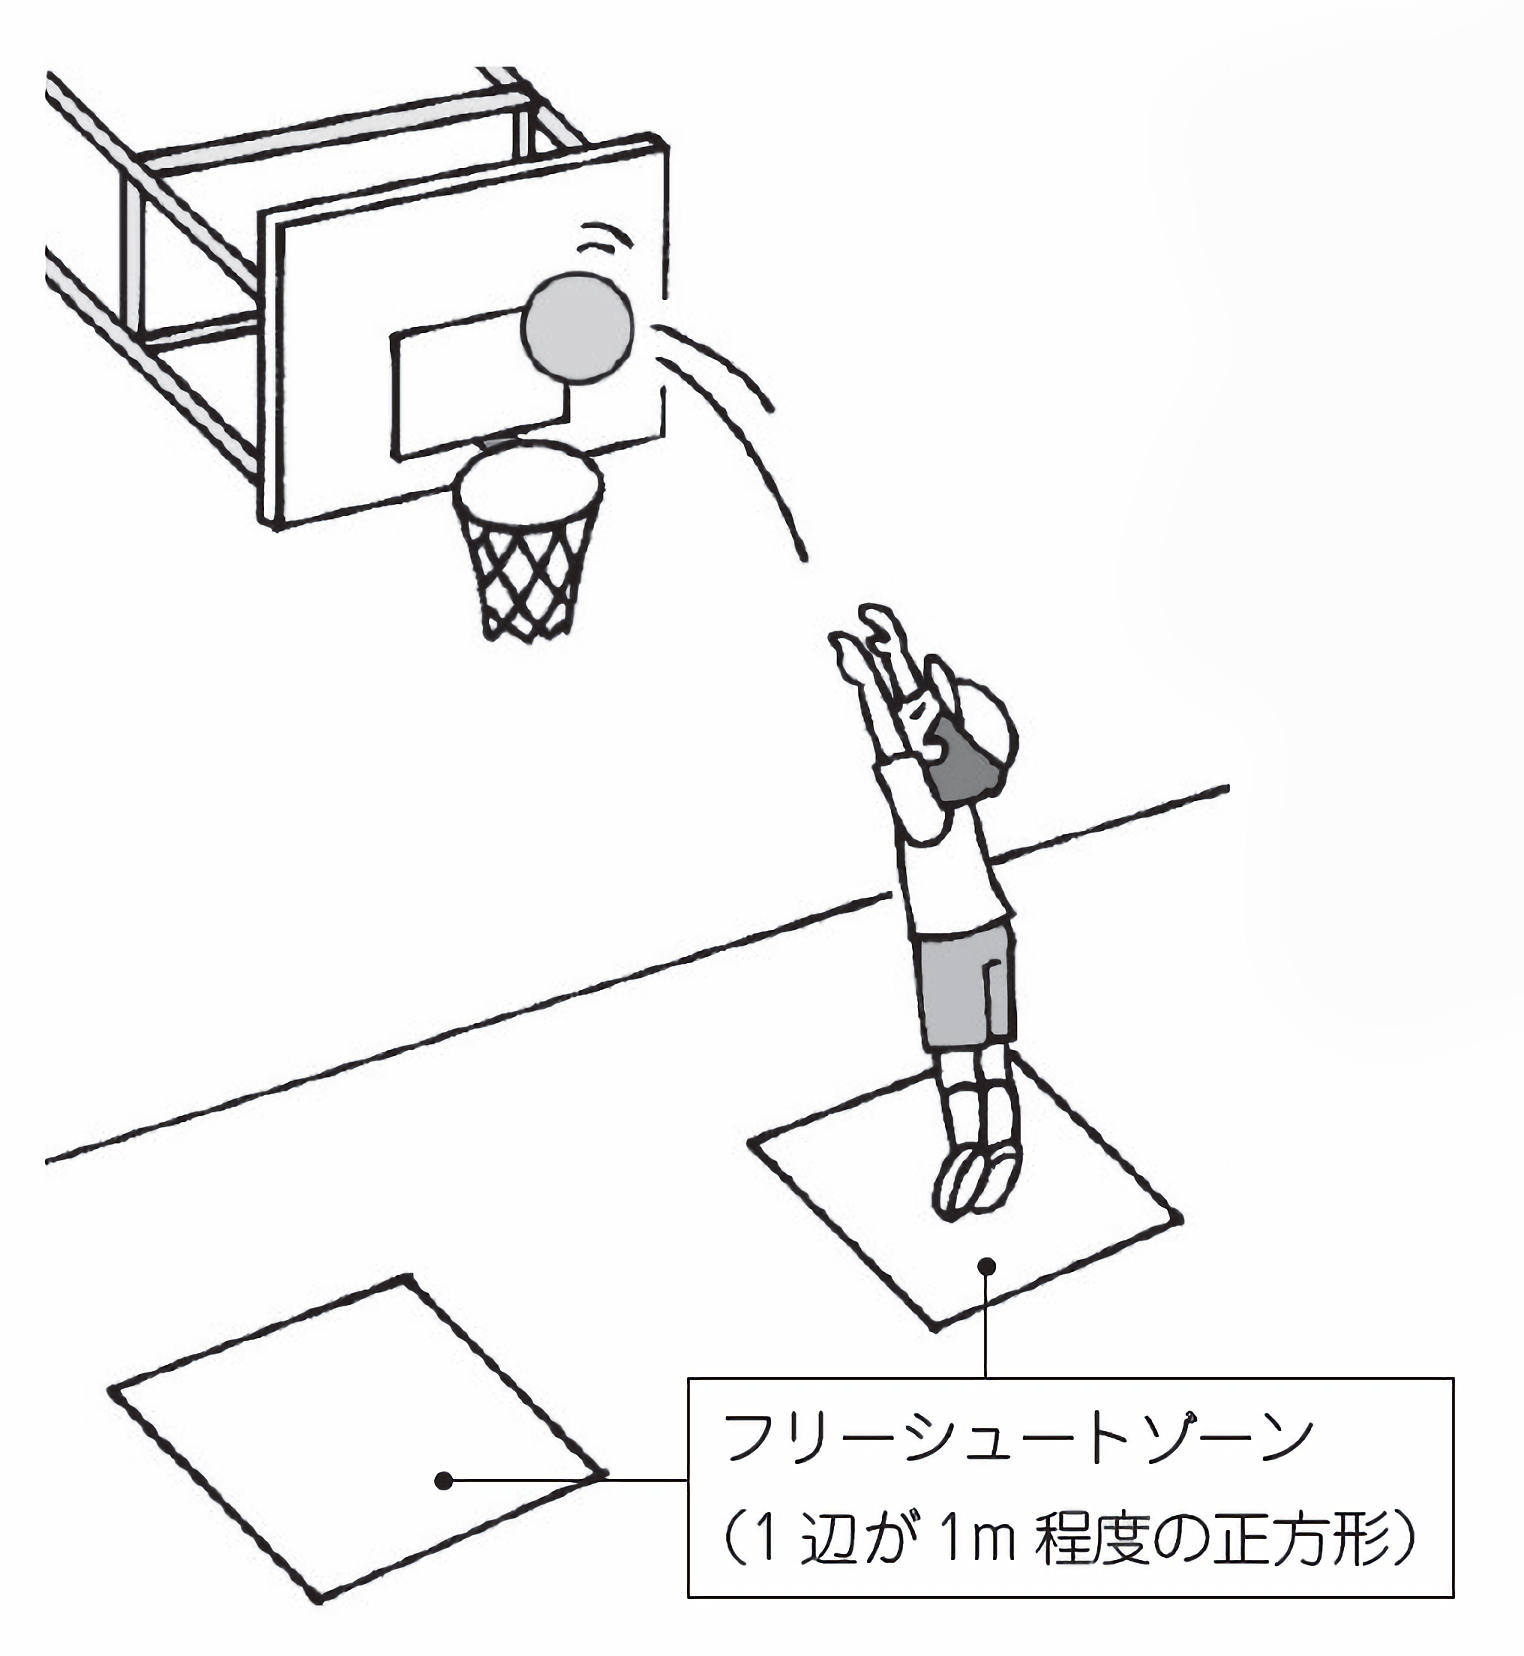 小5体育 バスケットボール ゴール型ゲーム 指導アイデア みんなの教育技術